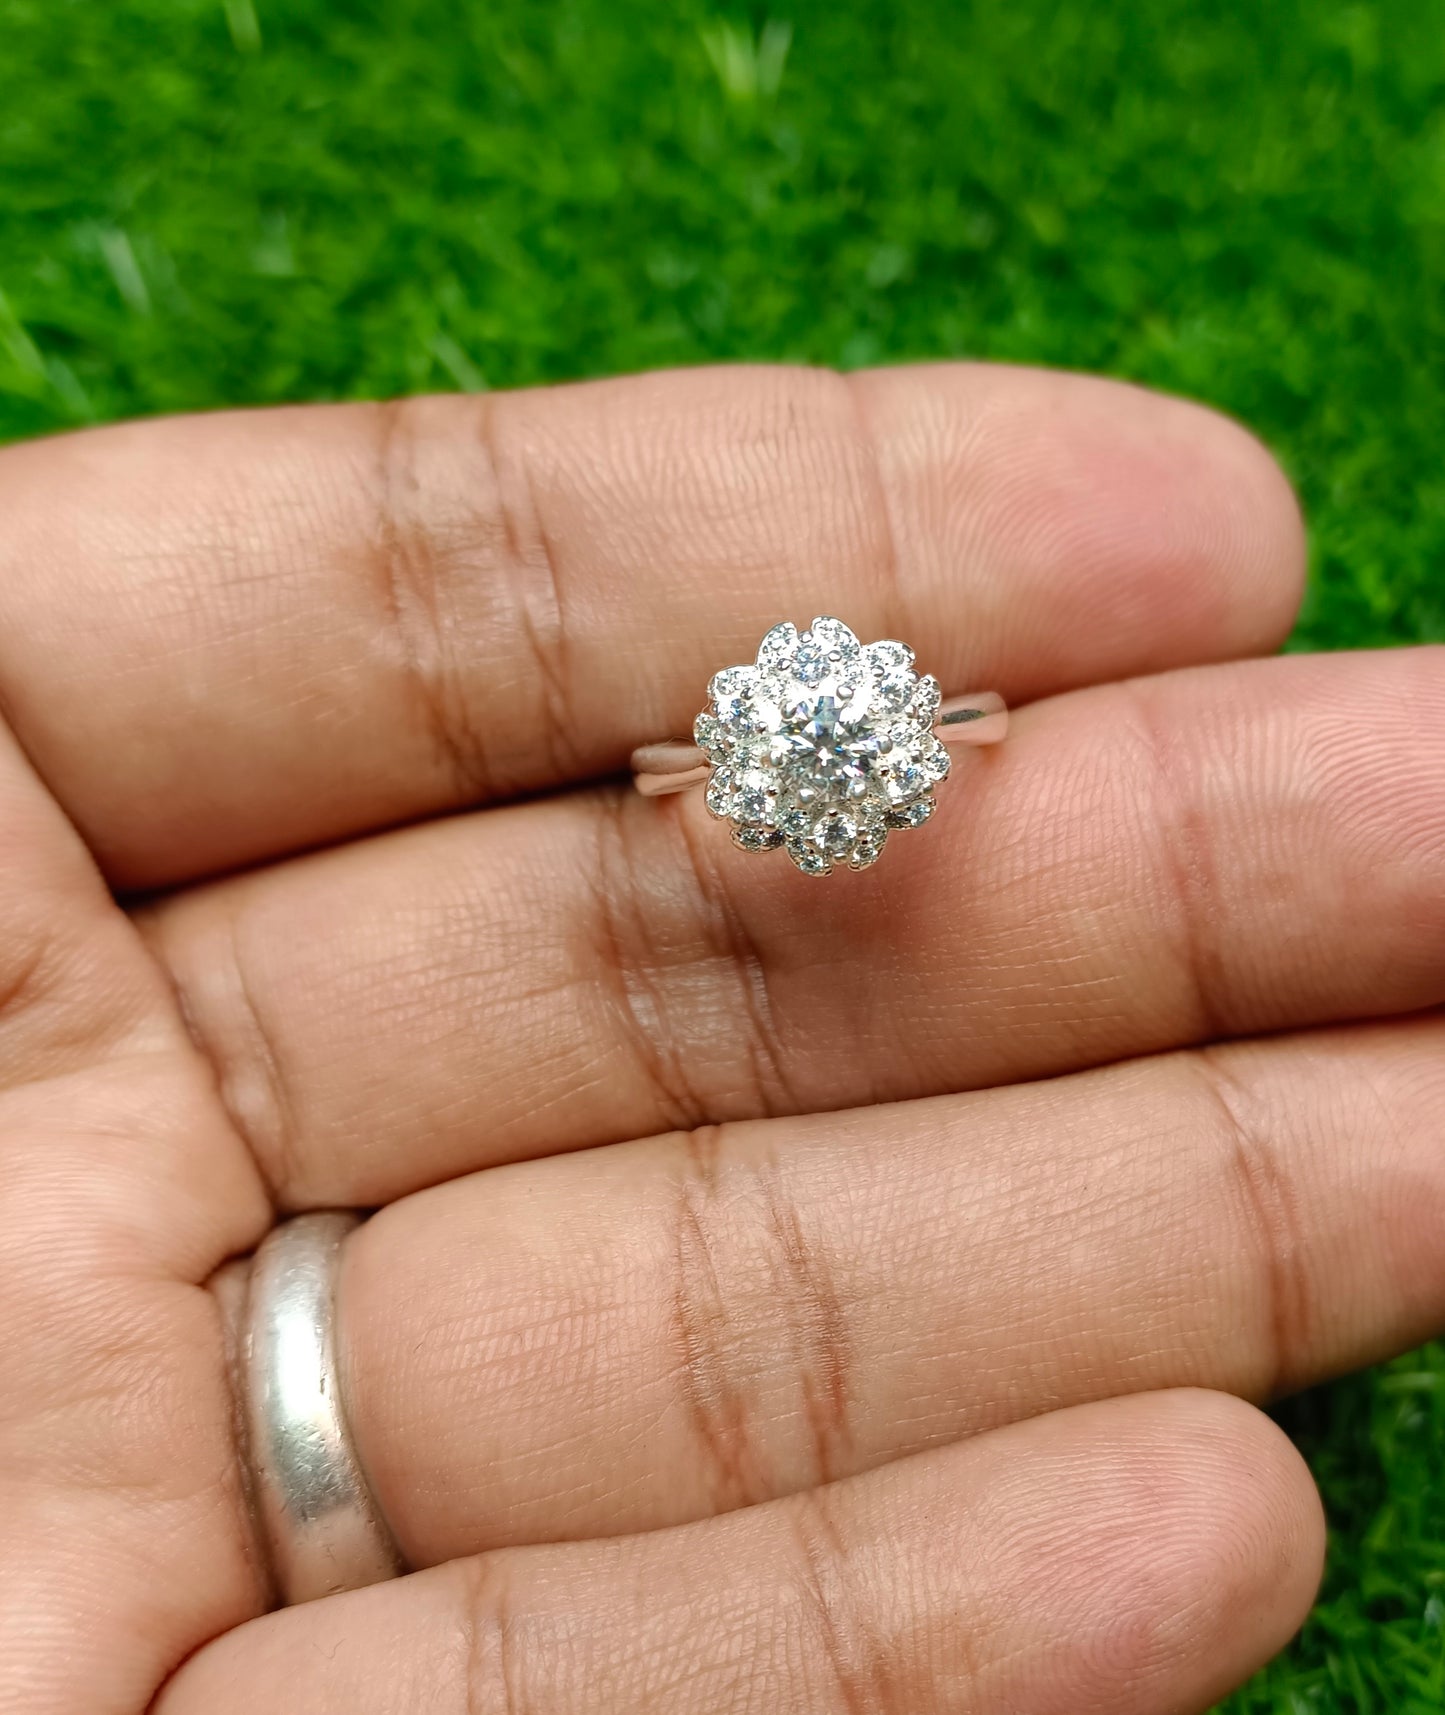 Moissanite diamond 0.5 CRT Ring